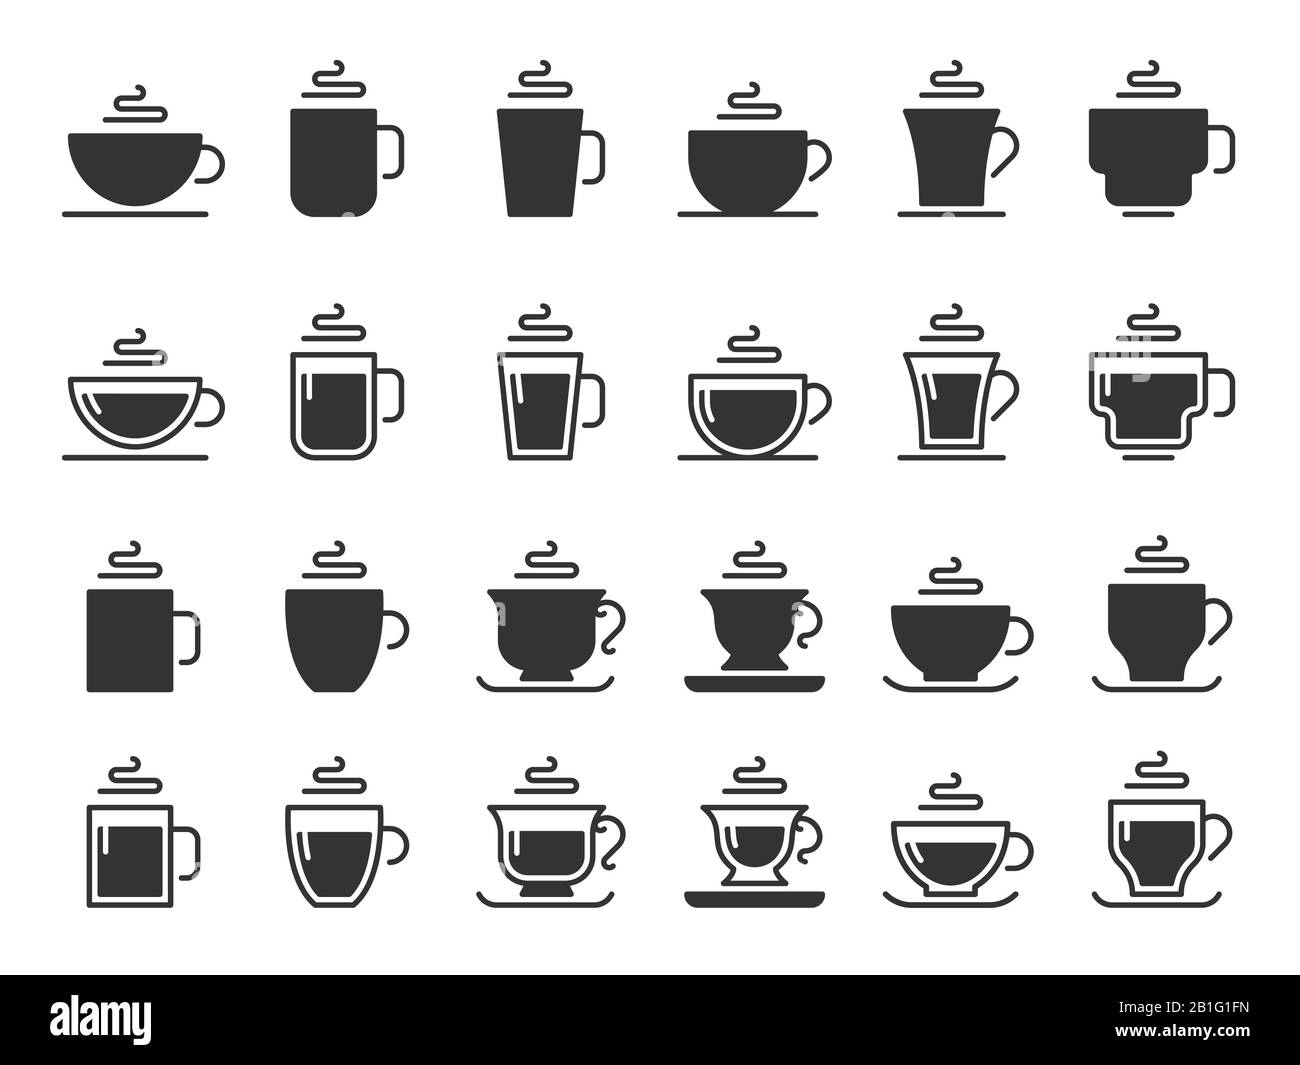 Silhouettensymbole für Kaffeetasse. Heißgetränke Becher, Becher mit schwarzem Schablonensymbol, Vektorsatz Stock Vektor